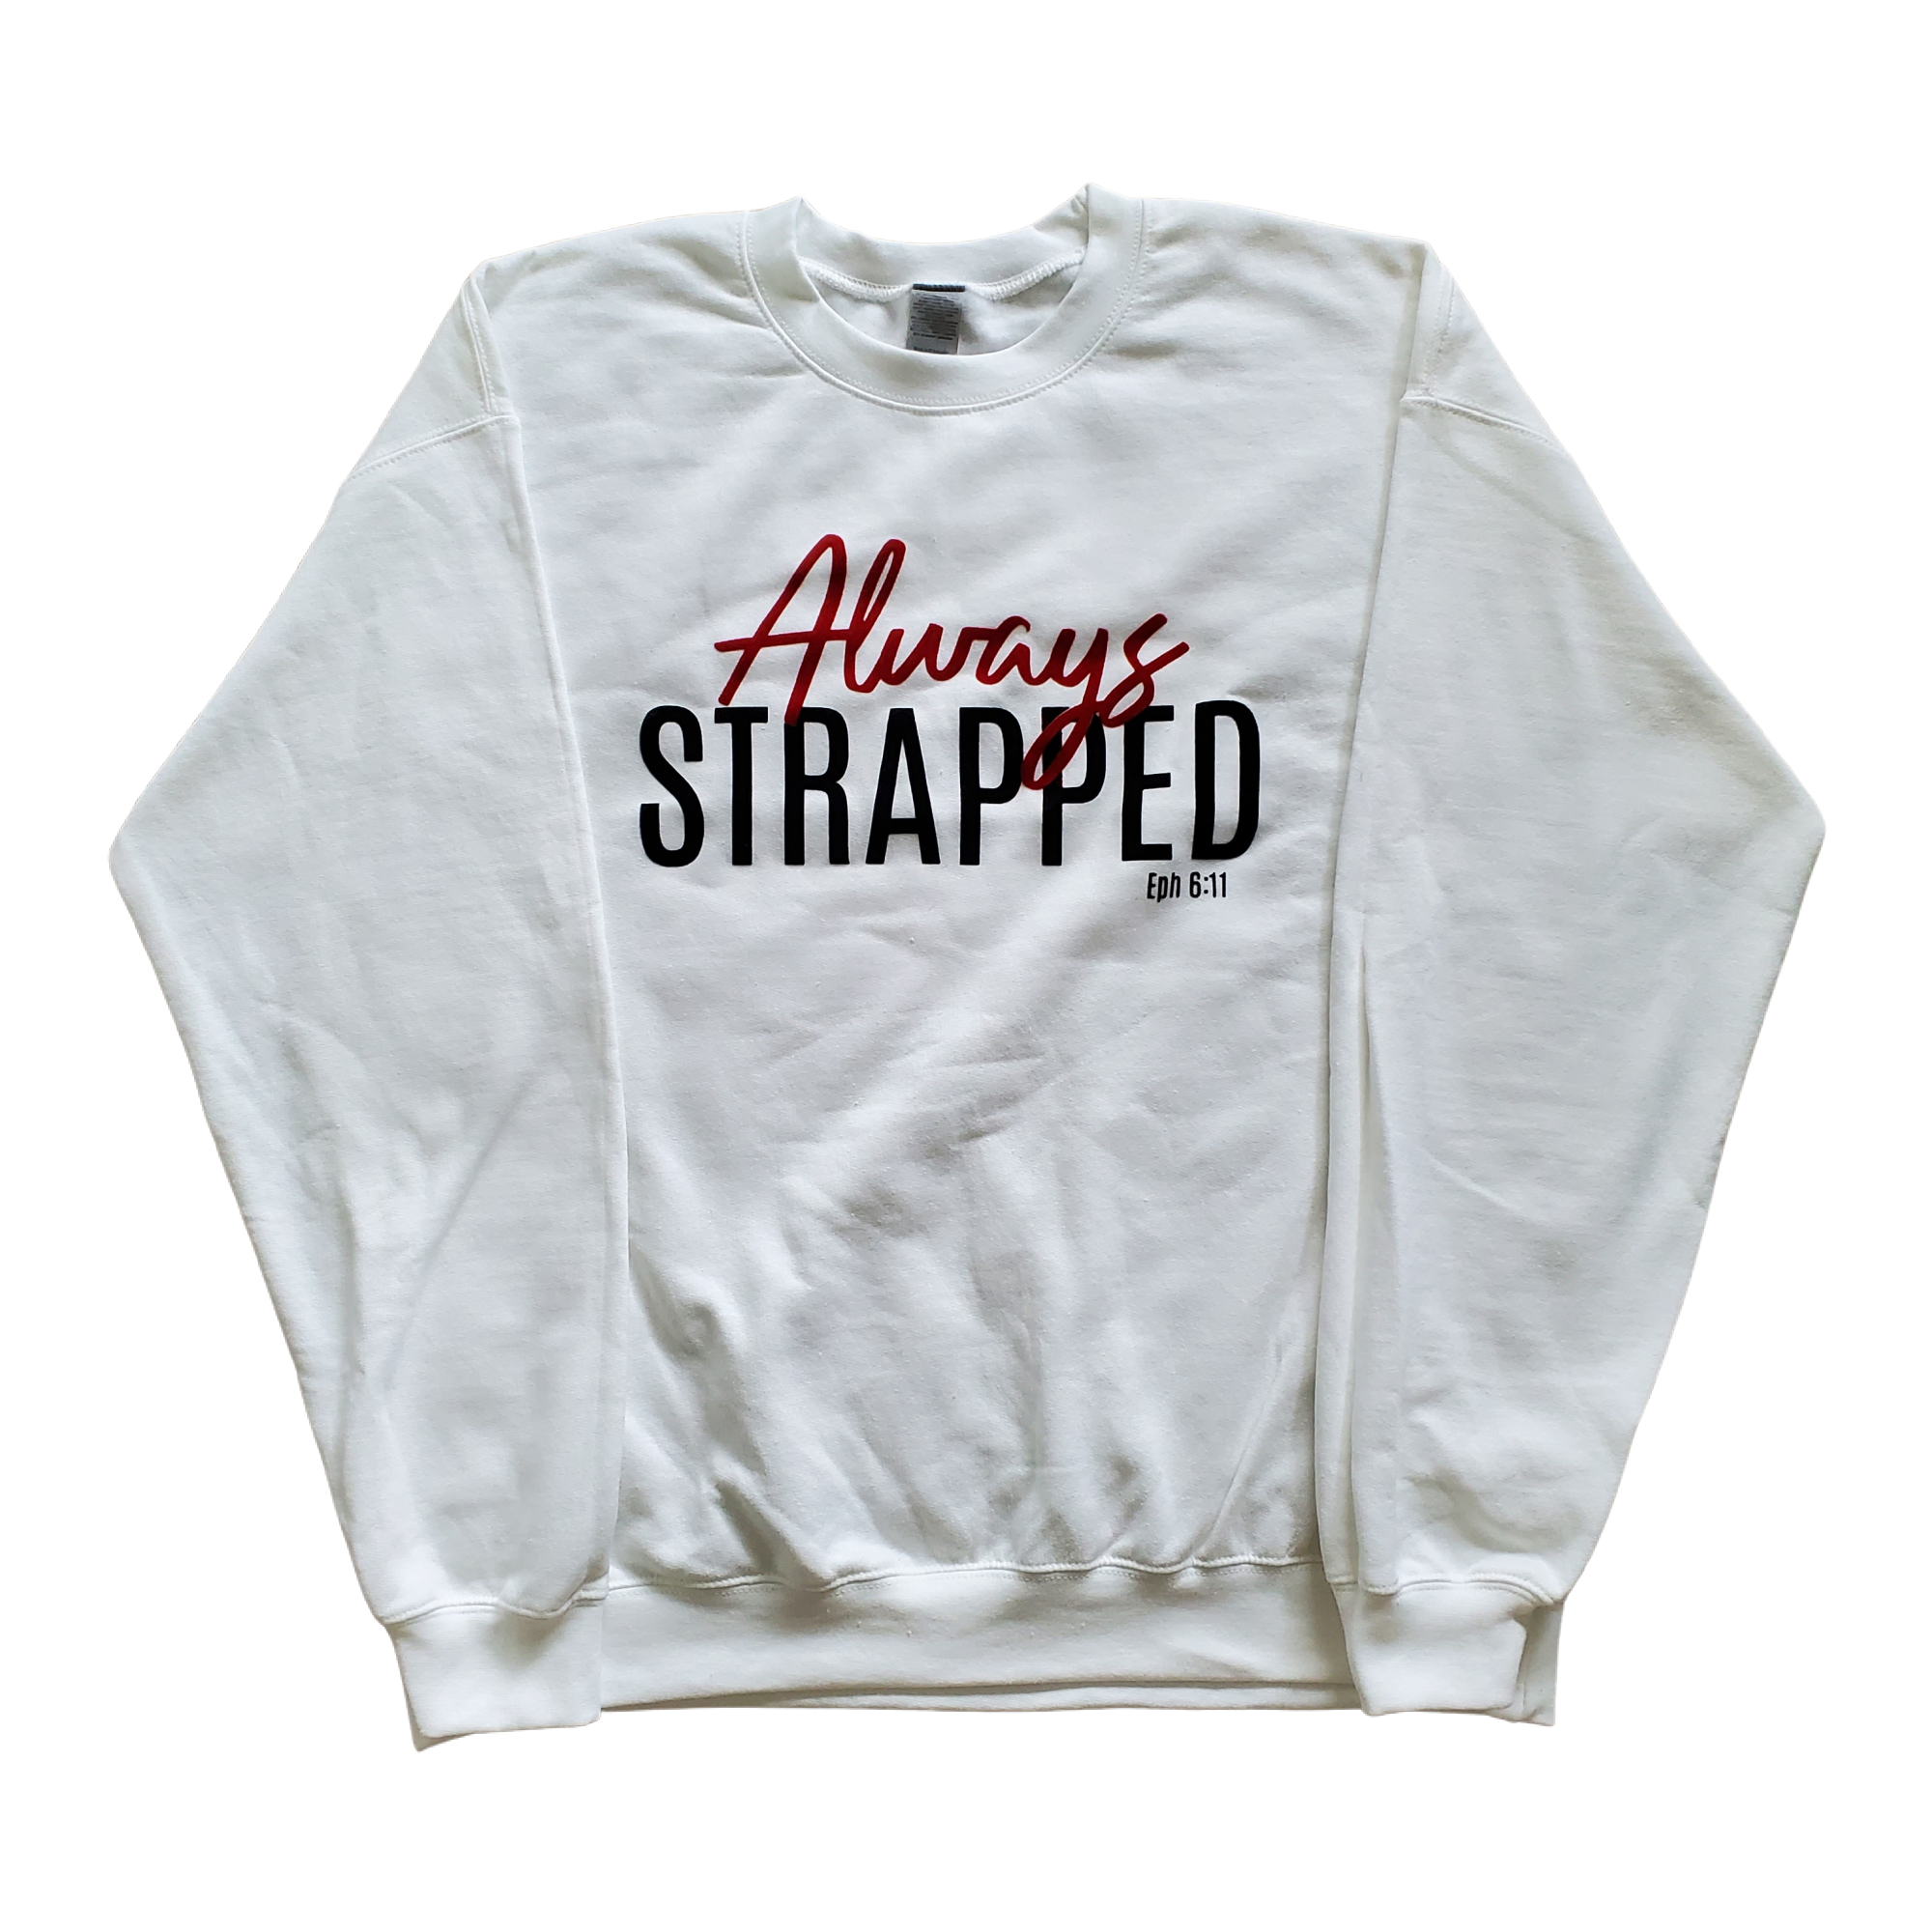 "ALWAYS STRAPPED" Sweatshirt - White